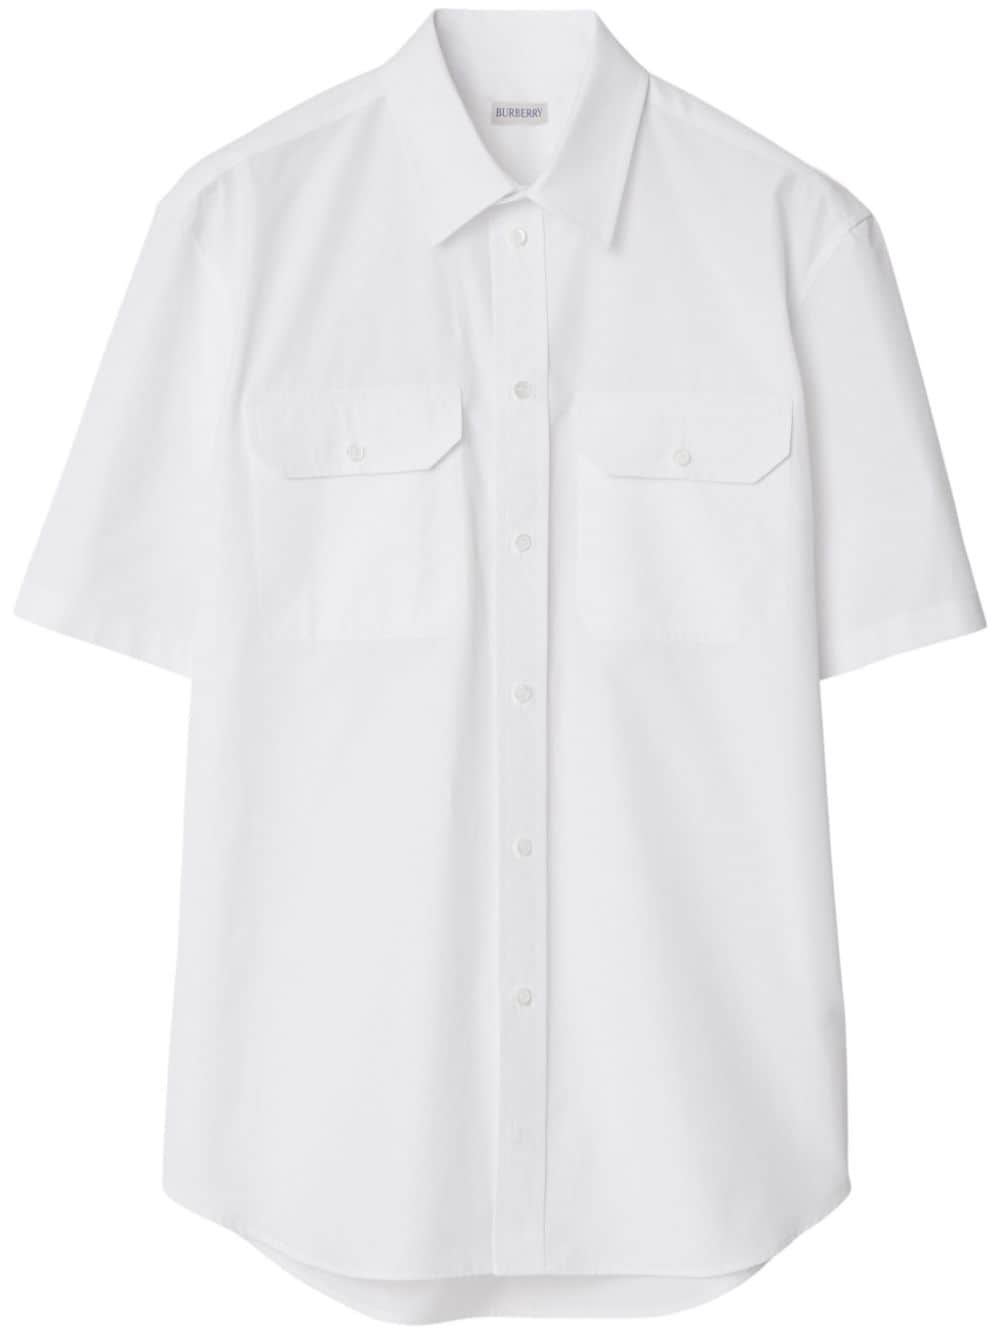 Burberry cotton poplin shirt - White von Burberry